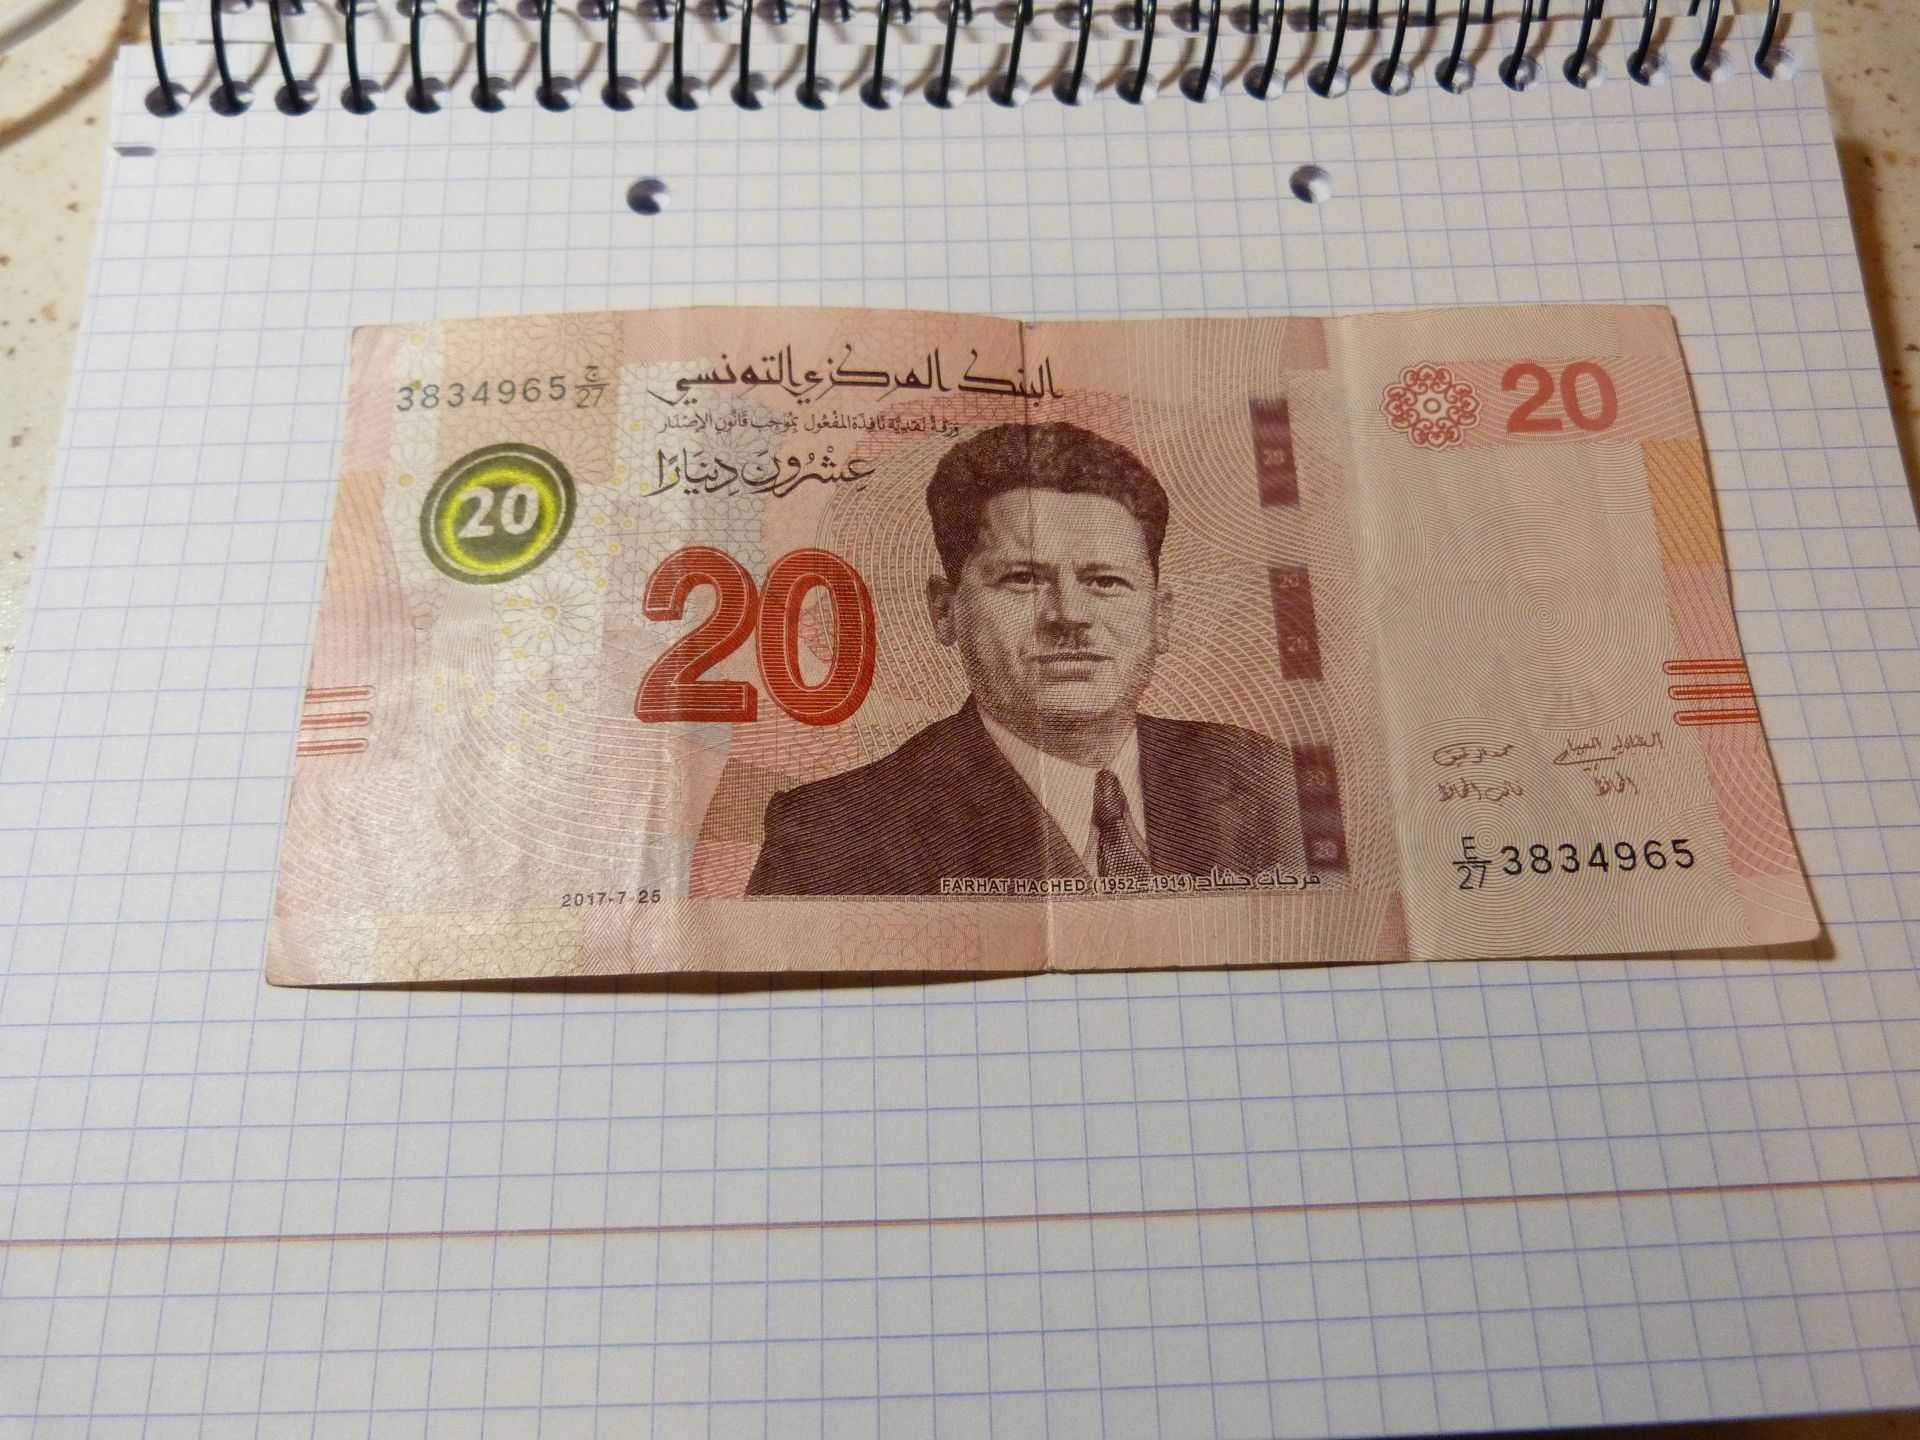 20 dinarów tunezyjskich